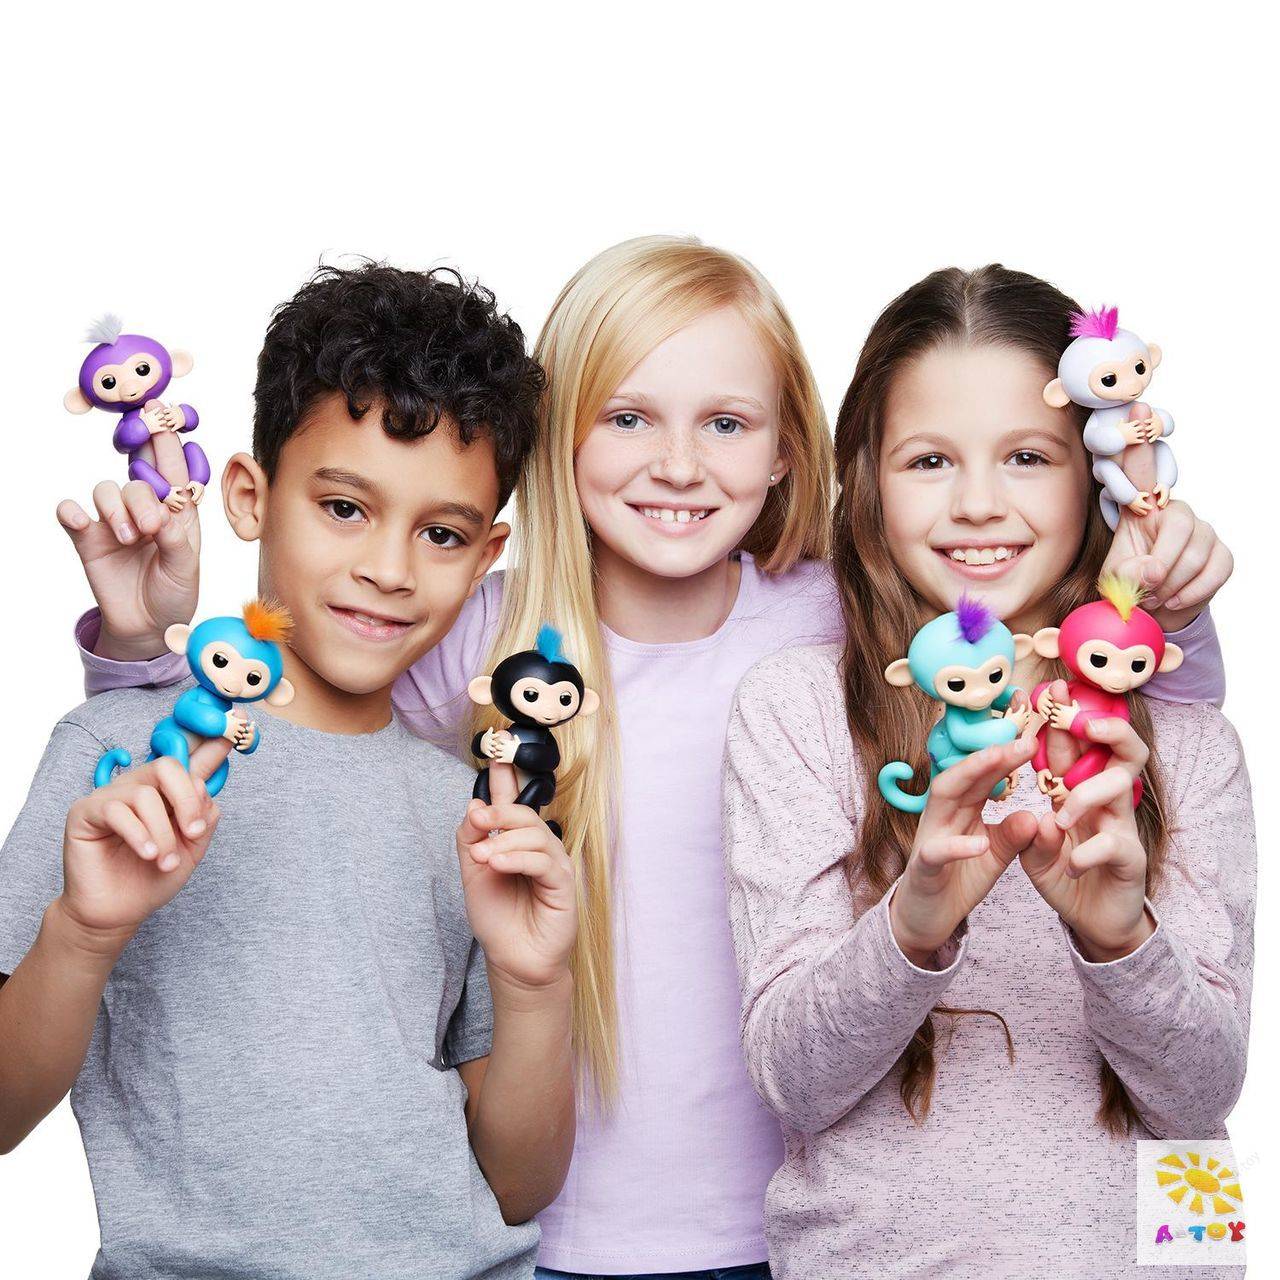 Видео игрушки новинки. Fingerlings, 3701a интерактивная обезьянка Финн (черная), 12см. Fingerlings, 3704a интерактивная обезьянка Миа (фиолетовая), 12см. Модные игрушки для детей.